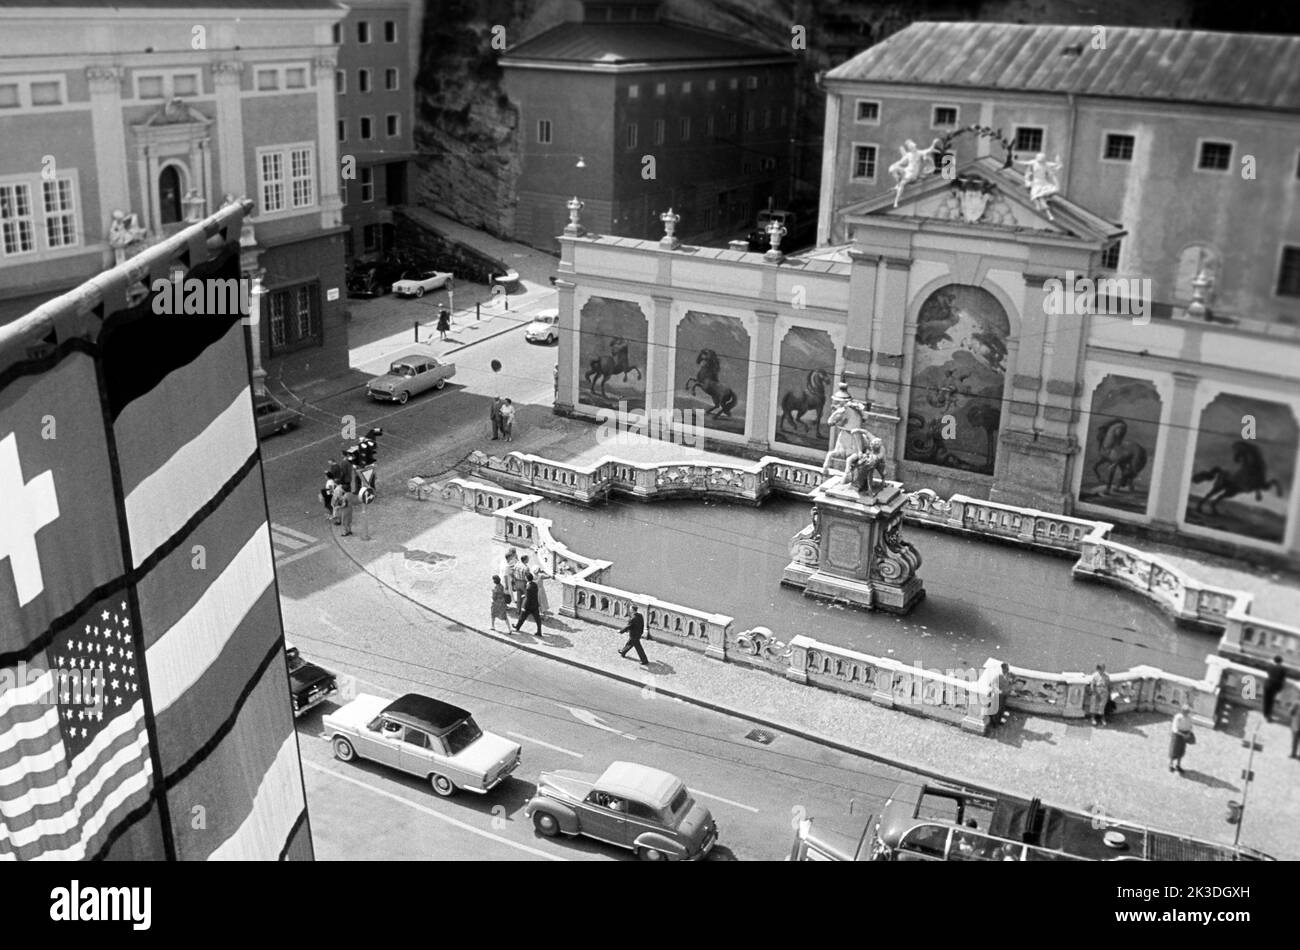 Die Pferdeschwemme am Herbert-von-Karajan-Platz in Salzburg, circa 1960. Pferdeschwemme fountain at Herbert von Karajan Square in Salzburg, around 1960. Stock Photo